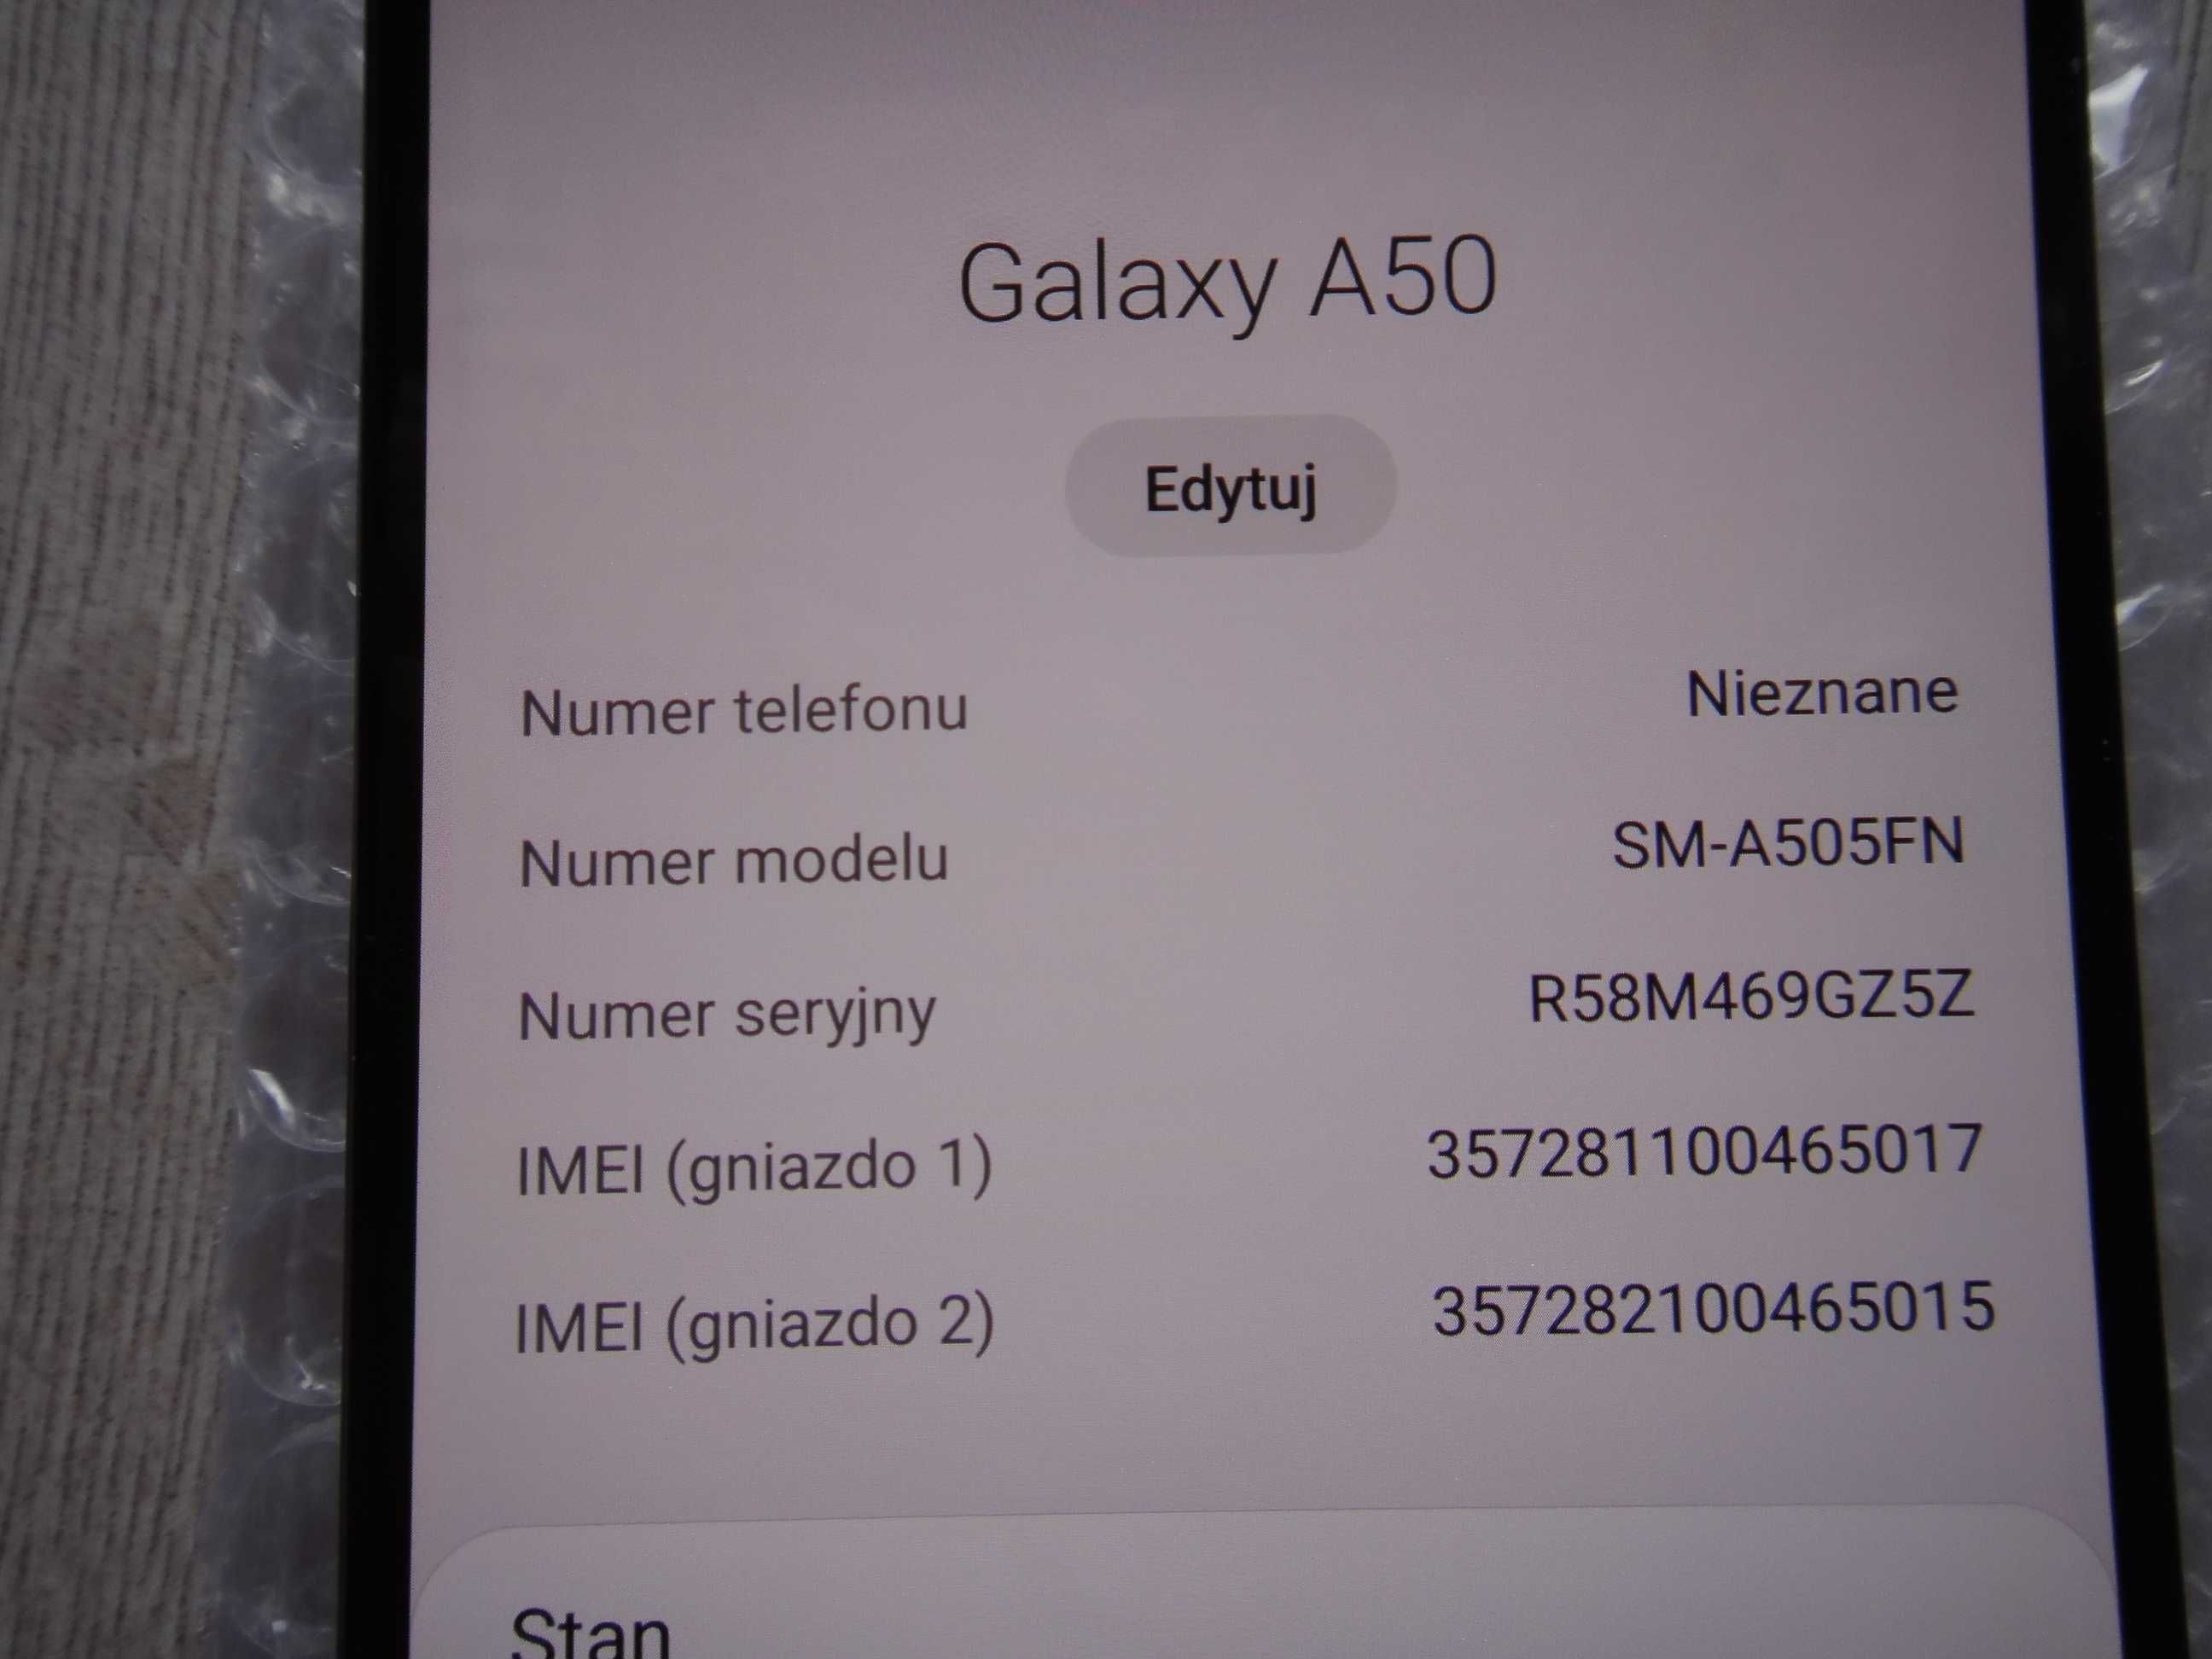 Samsung Galaxy A50 Sm-A505Fn/Ds 128/4Gb.